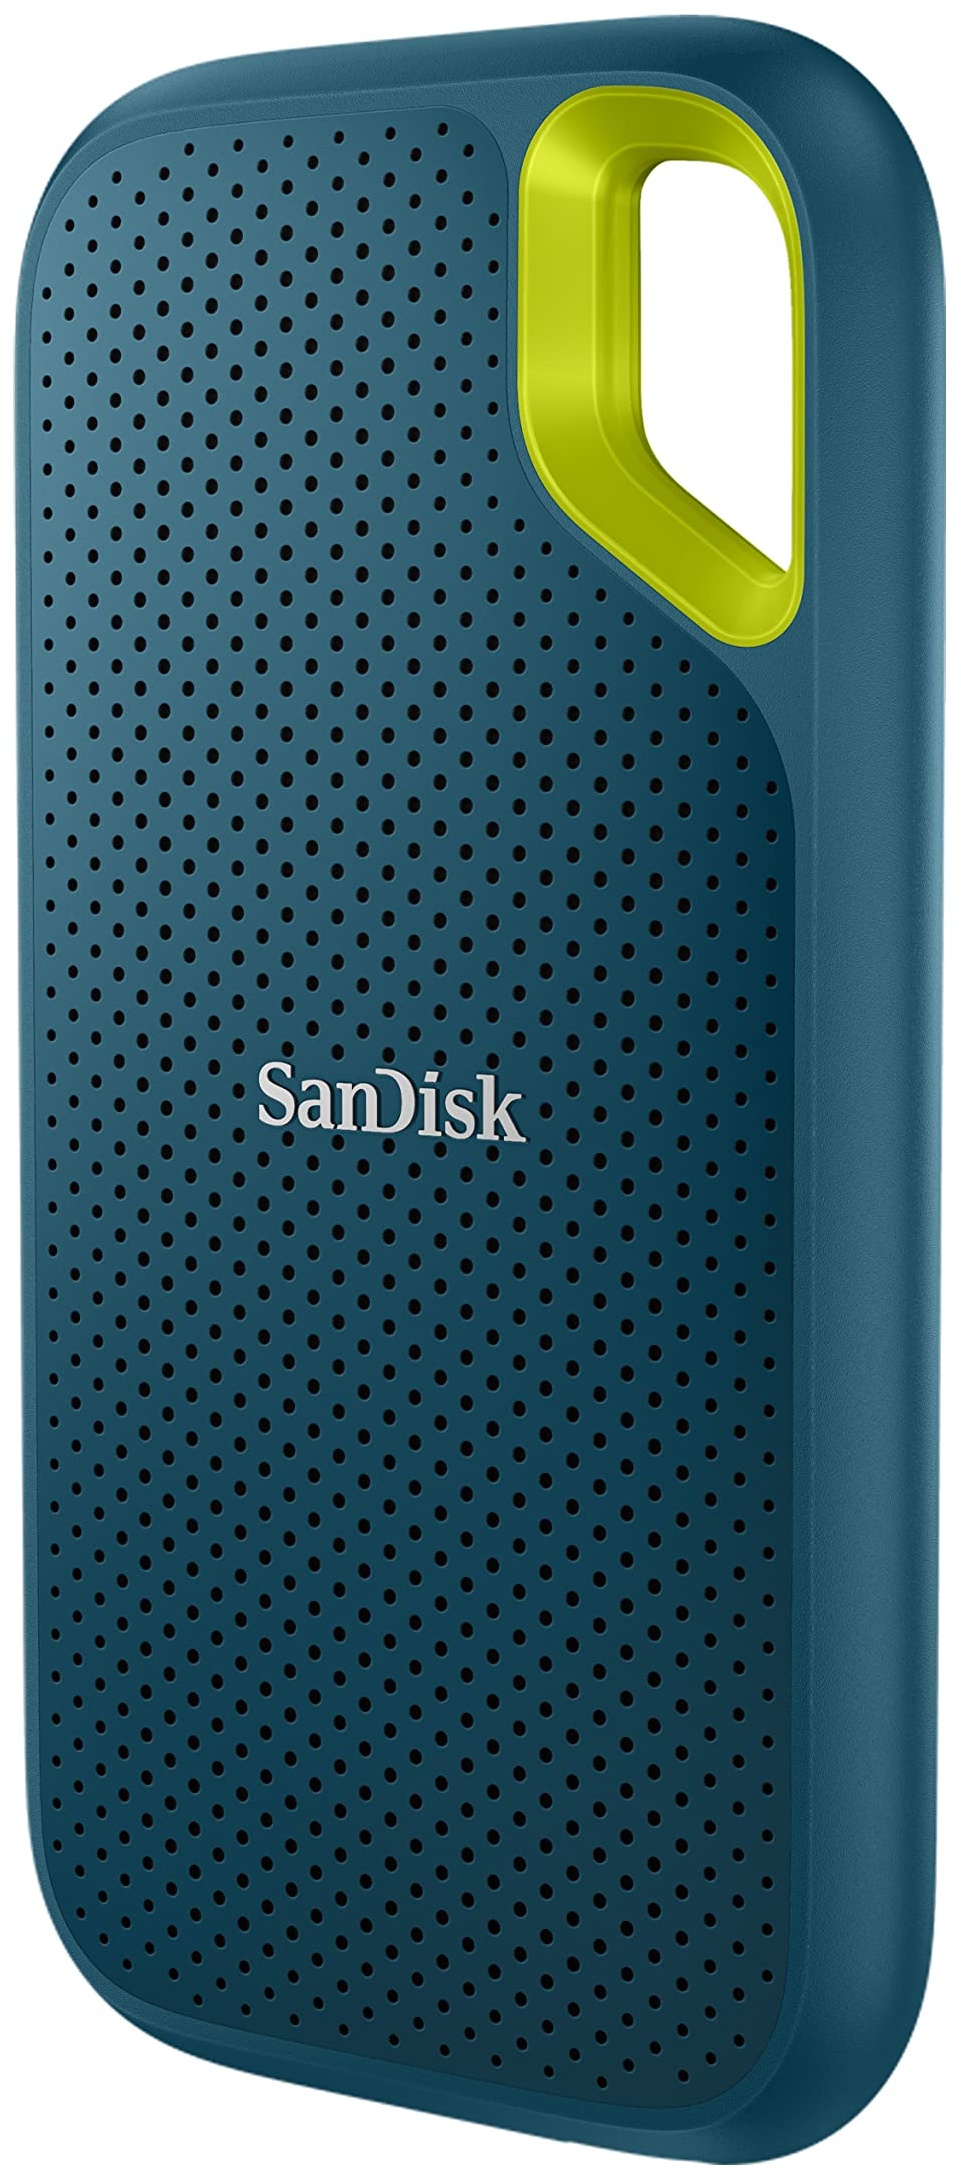 SanDisk Extreme Portable SSD 2 TB (tragbare NVMe SSD, USB-C, bis zu 1.050 MB/s Lesegeschwindigkeit und 1.000 MB/s Schreibgeschwindigkeit, wasser- und staubbeständig) Monterey